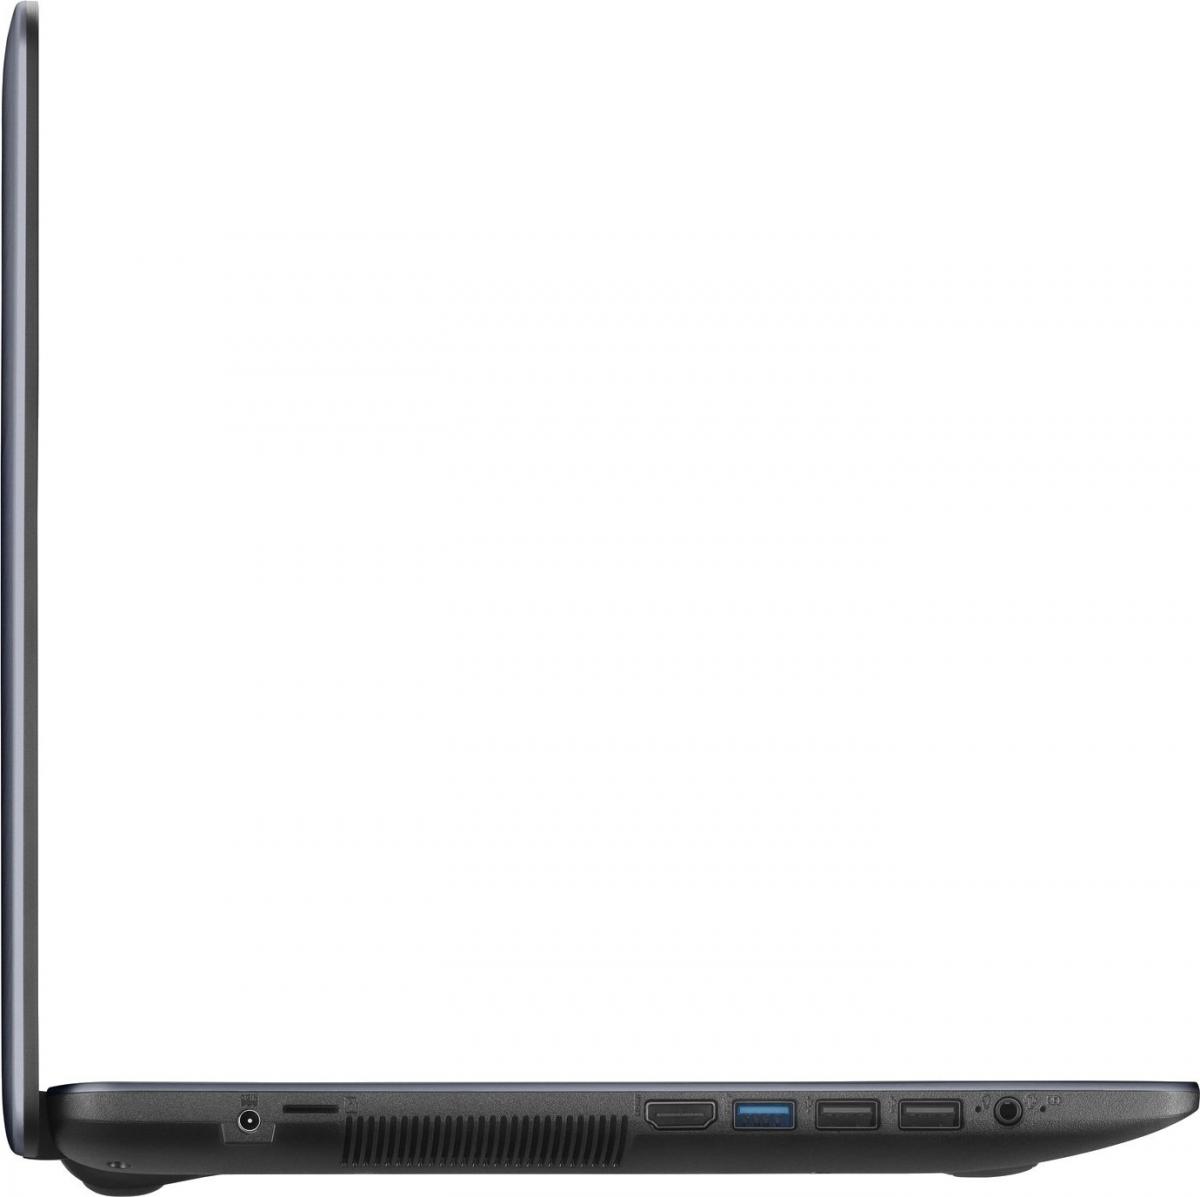 Ноутбук Asus A543ma Dm1196 Купить